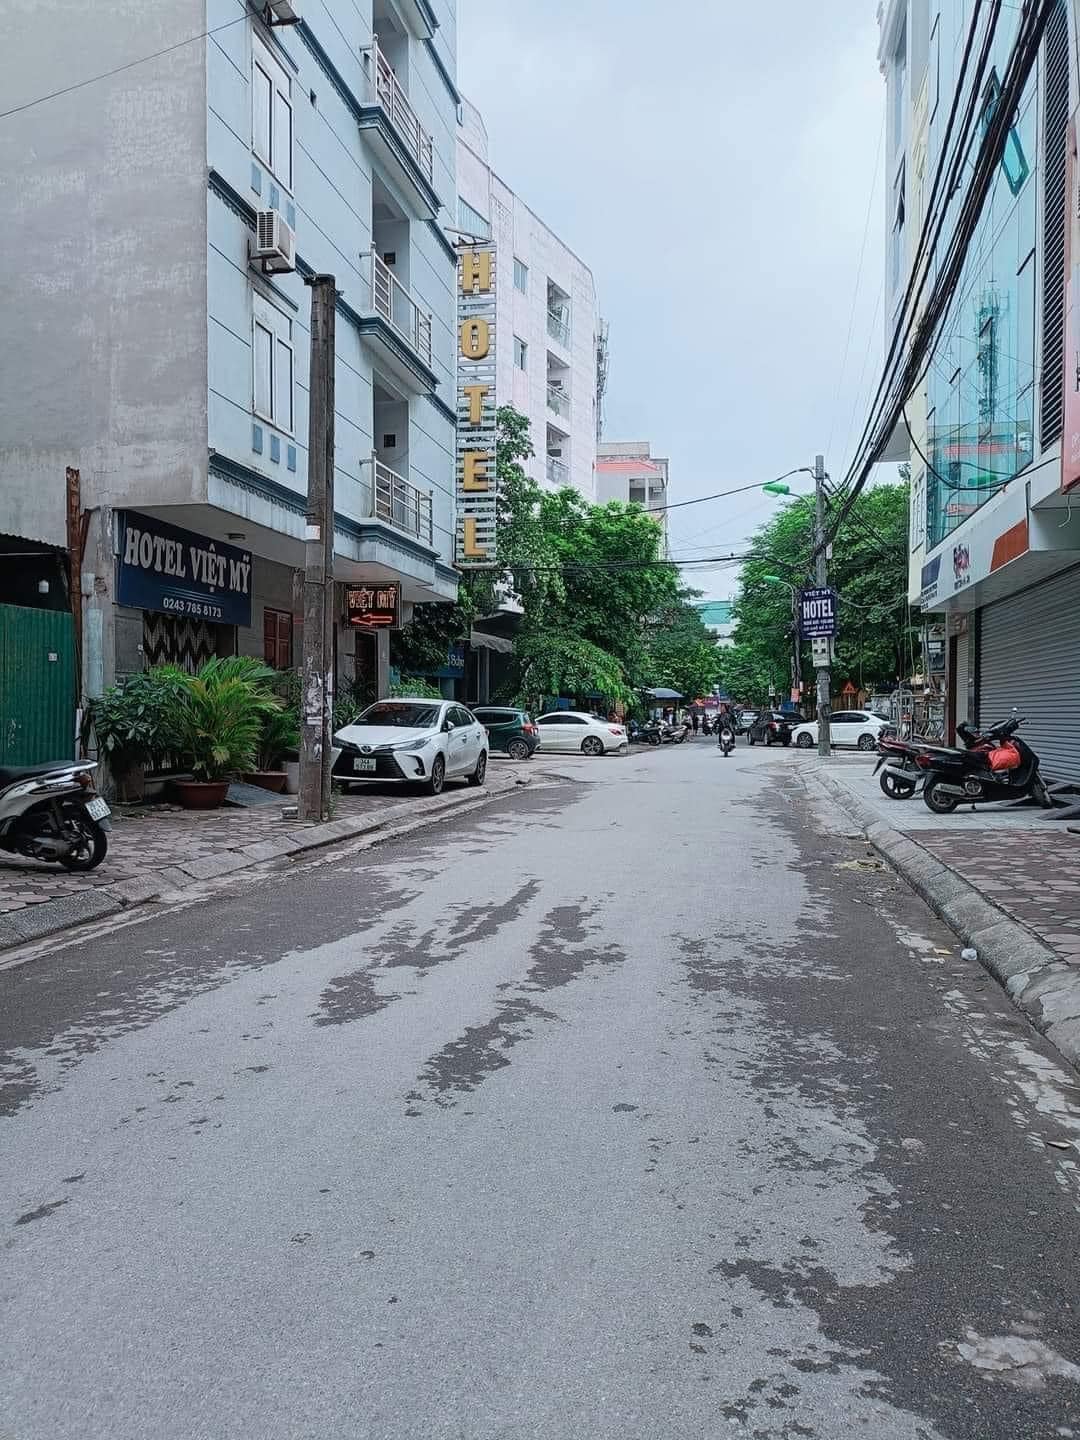 Bán nhà Xuân Thủy 43m2 nắng mưa có ô tô đón cận cửa giá 150 triệu/m2 2